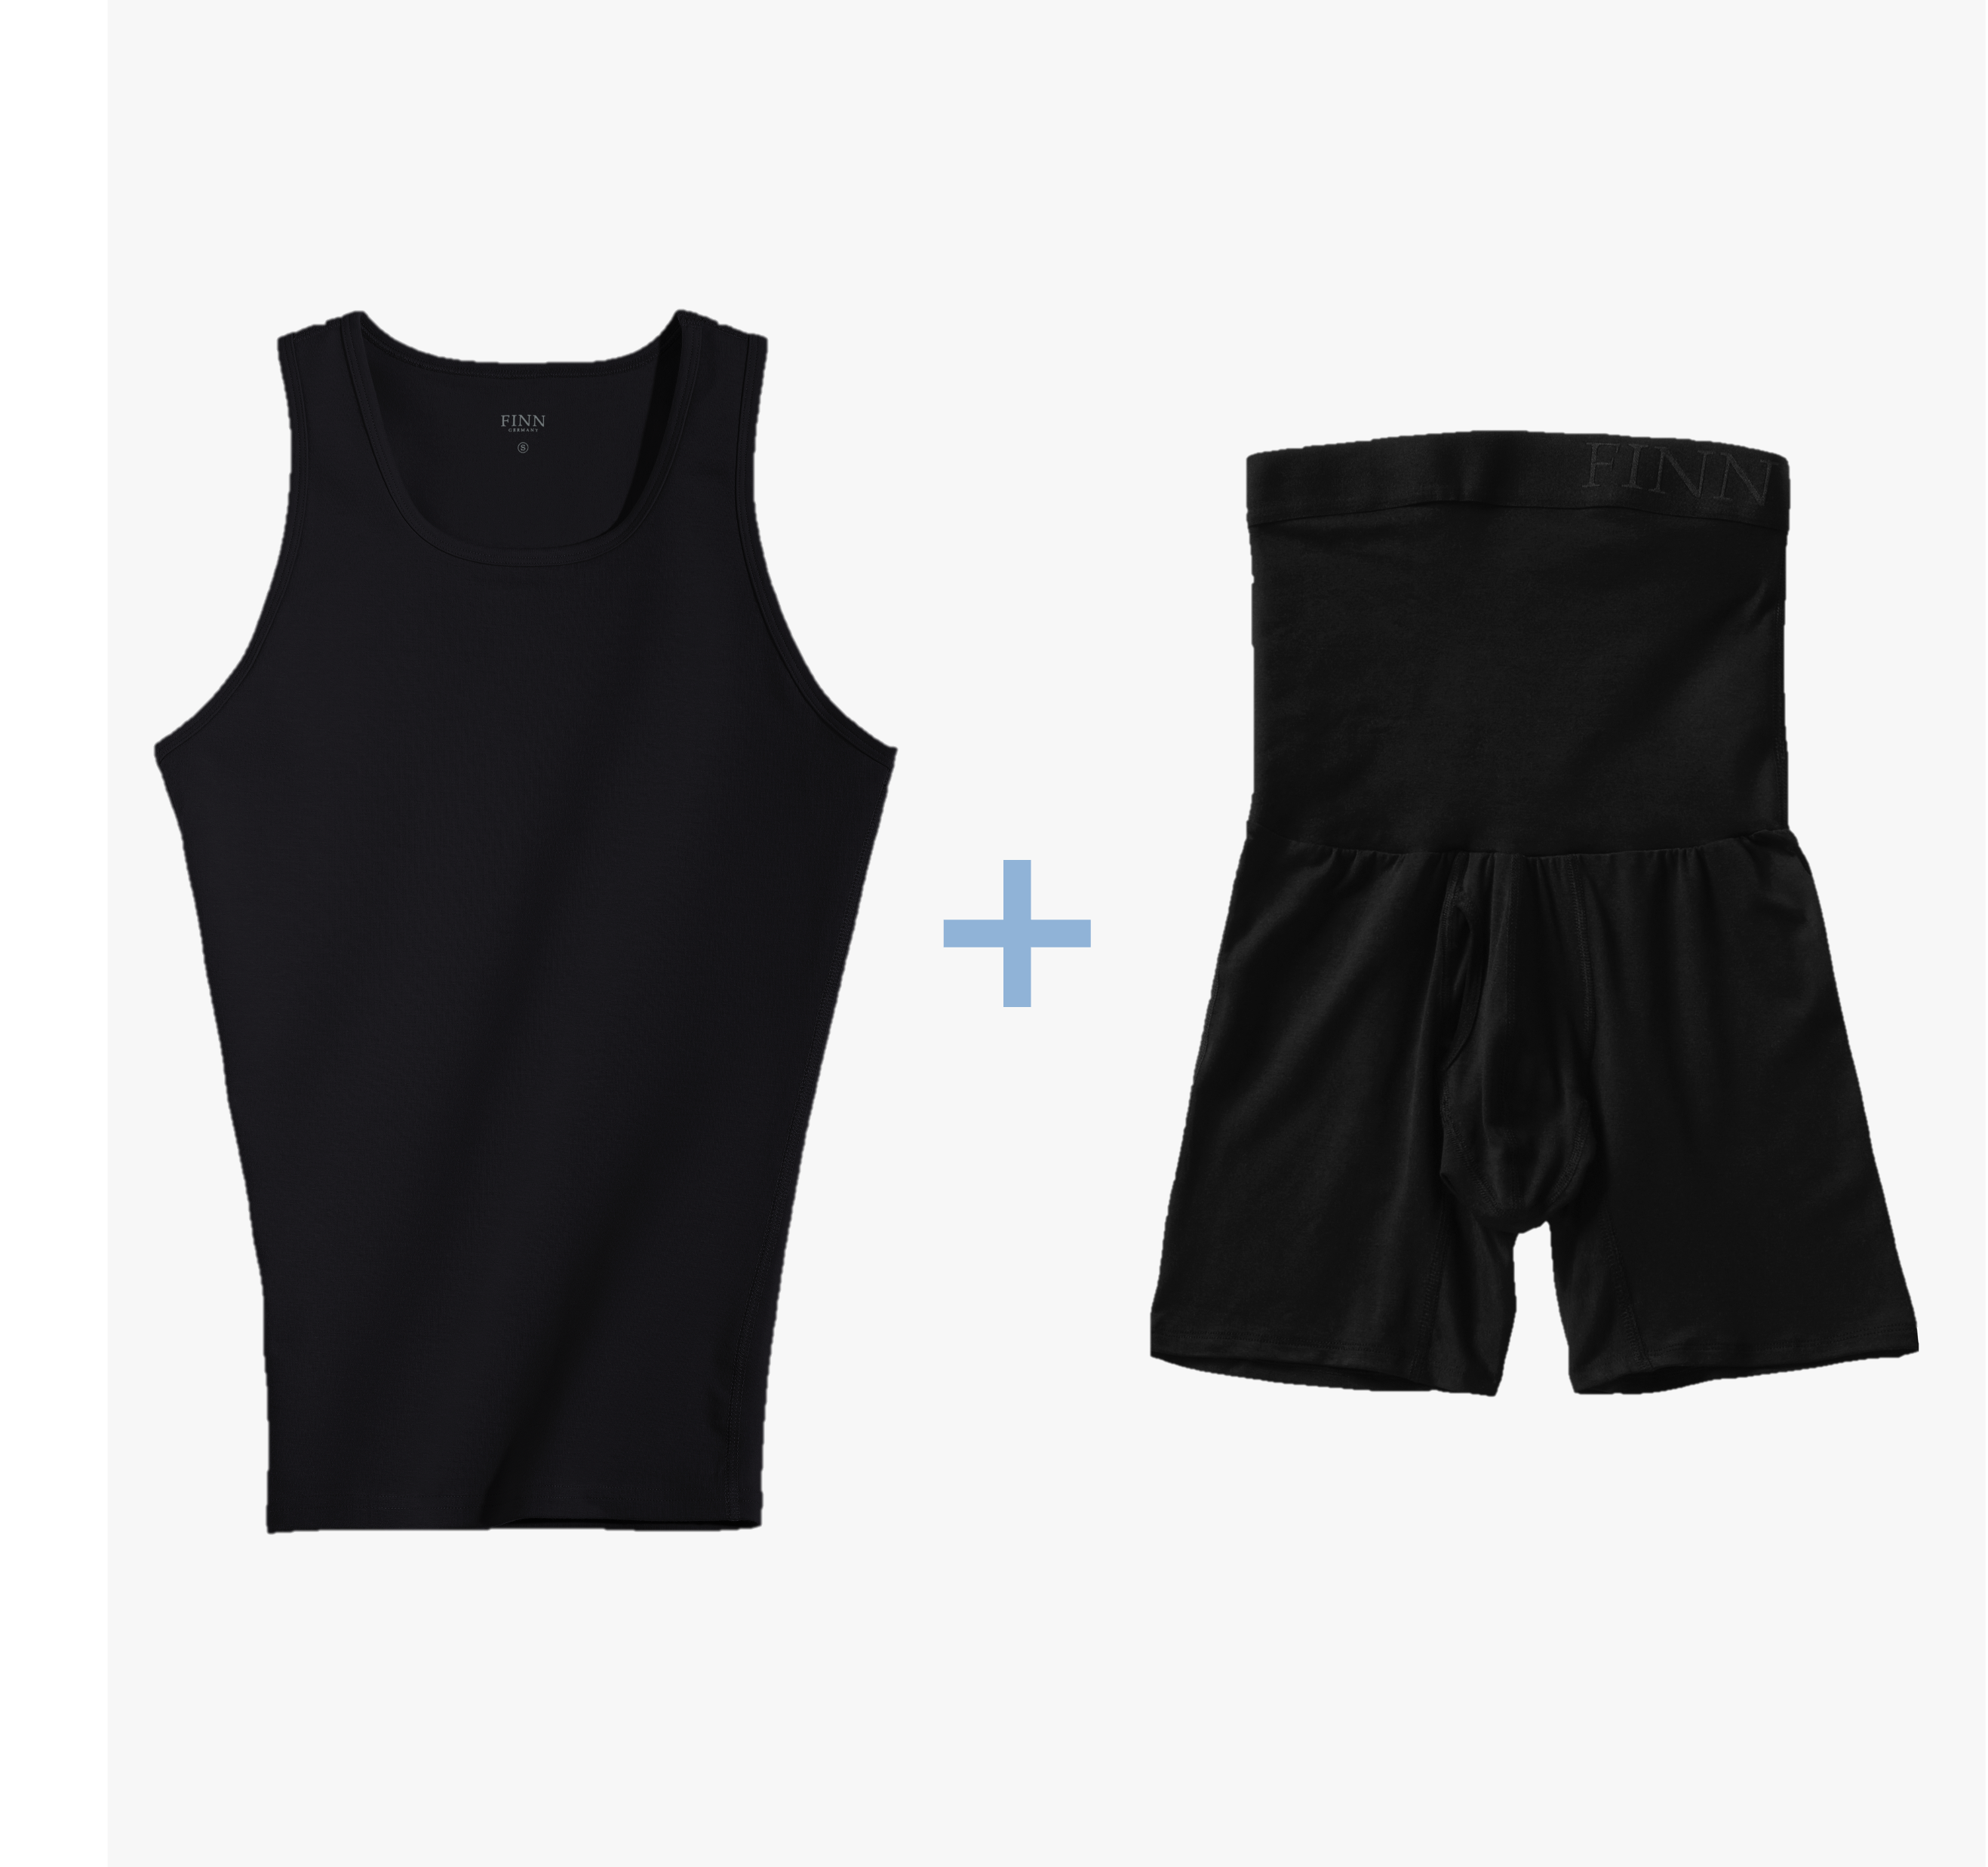 Ein Set mit schwarzen Kompressions-Unterhemd und schwarzen Shape-Boxershorts für Herren. Starker Bauch-weg Effekt, hochwertige Baumwolle, maximaler Tragekomfort.